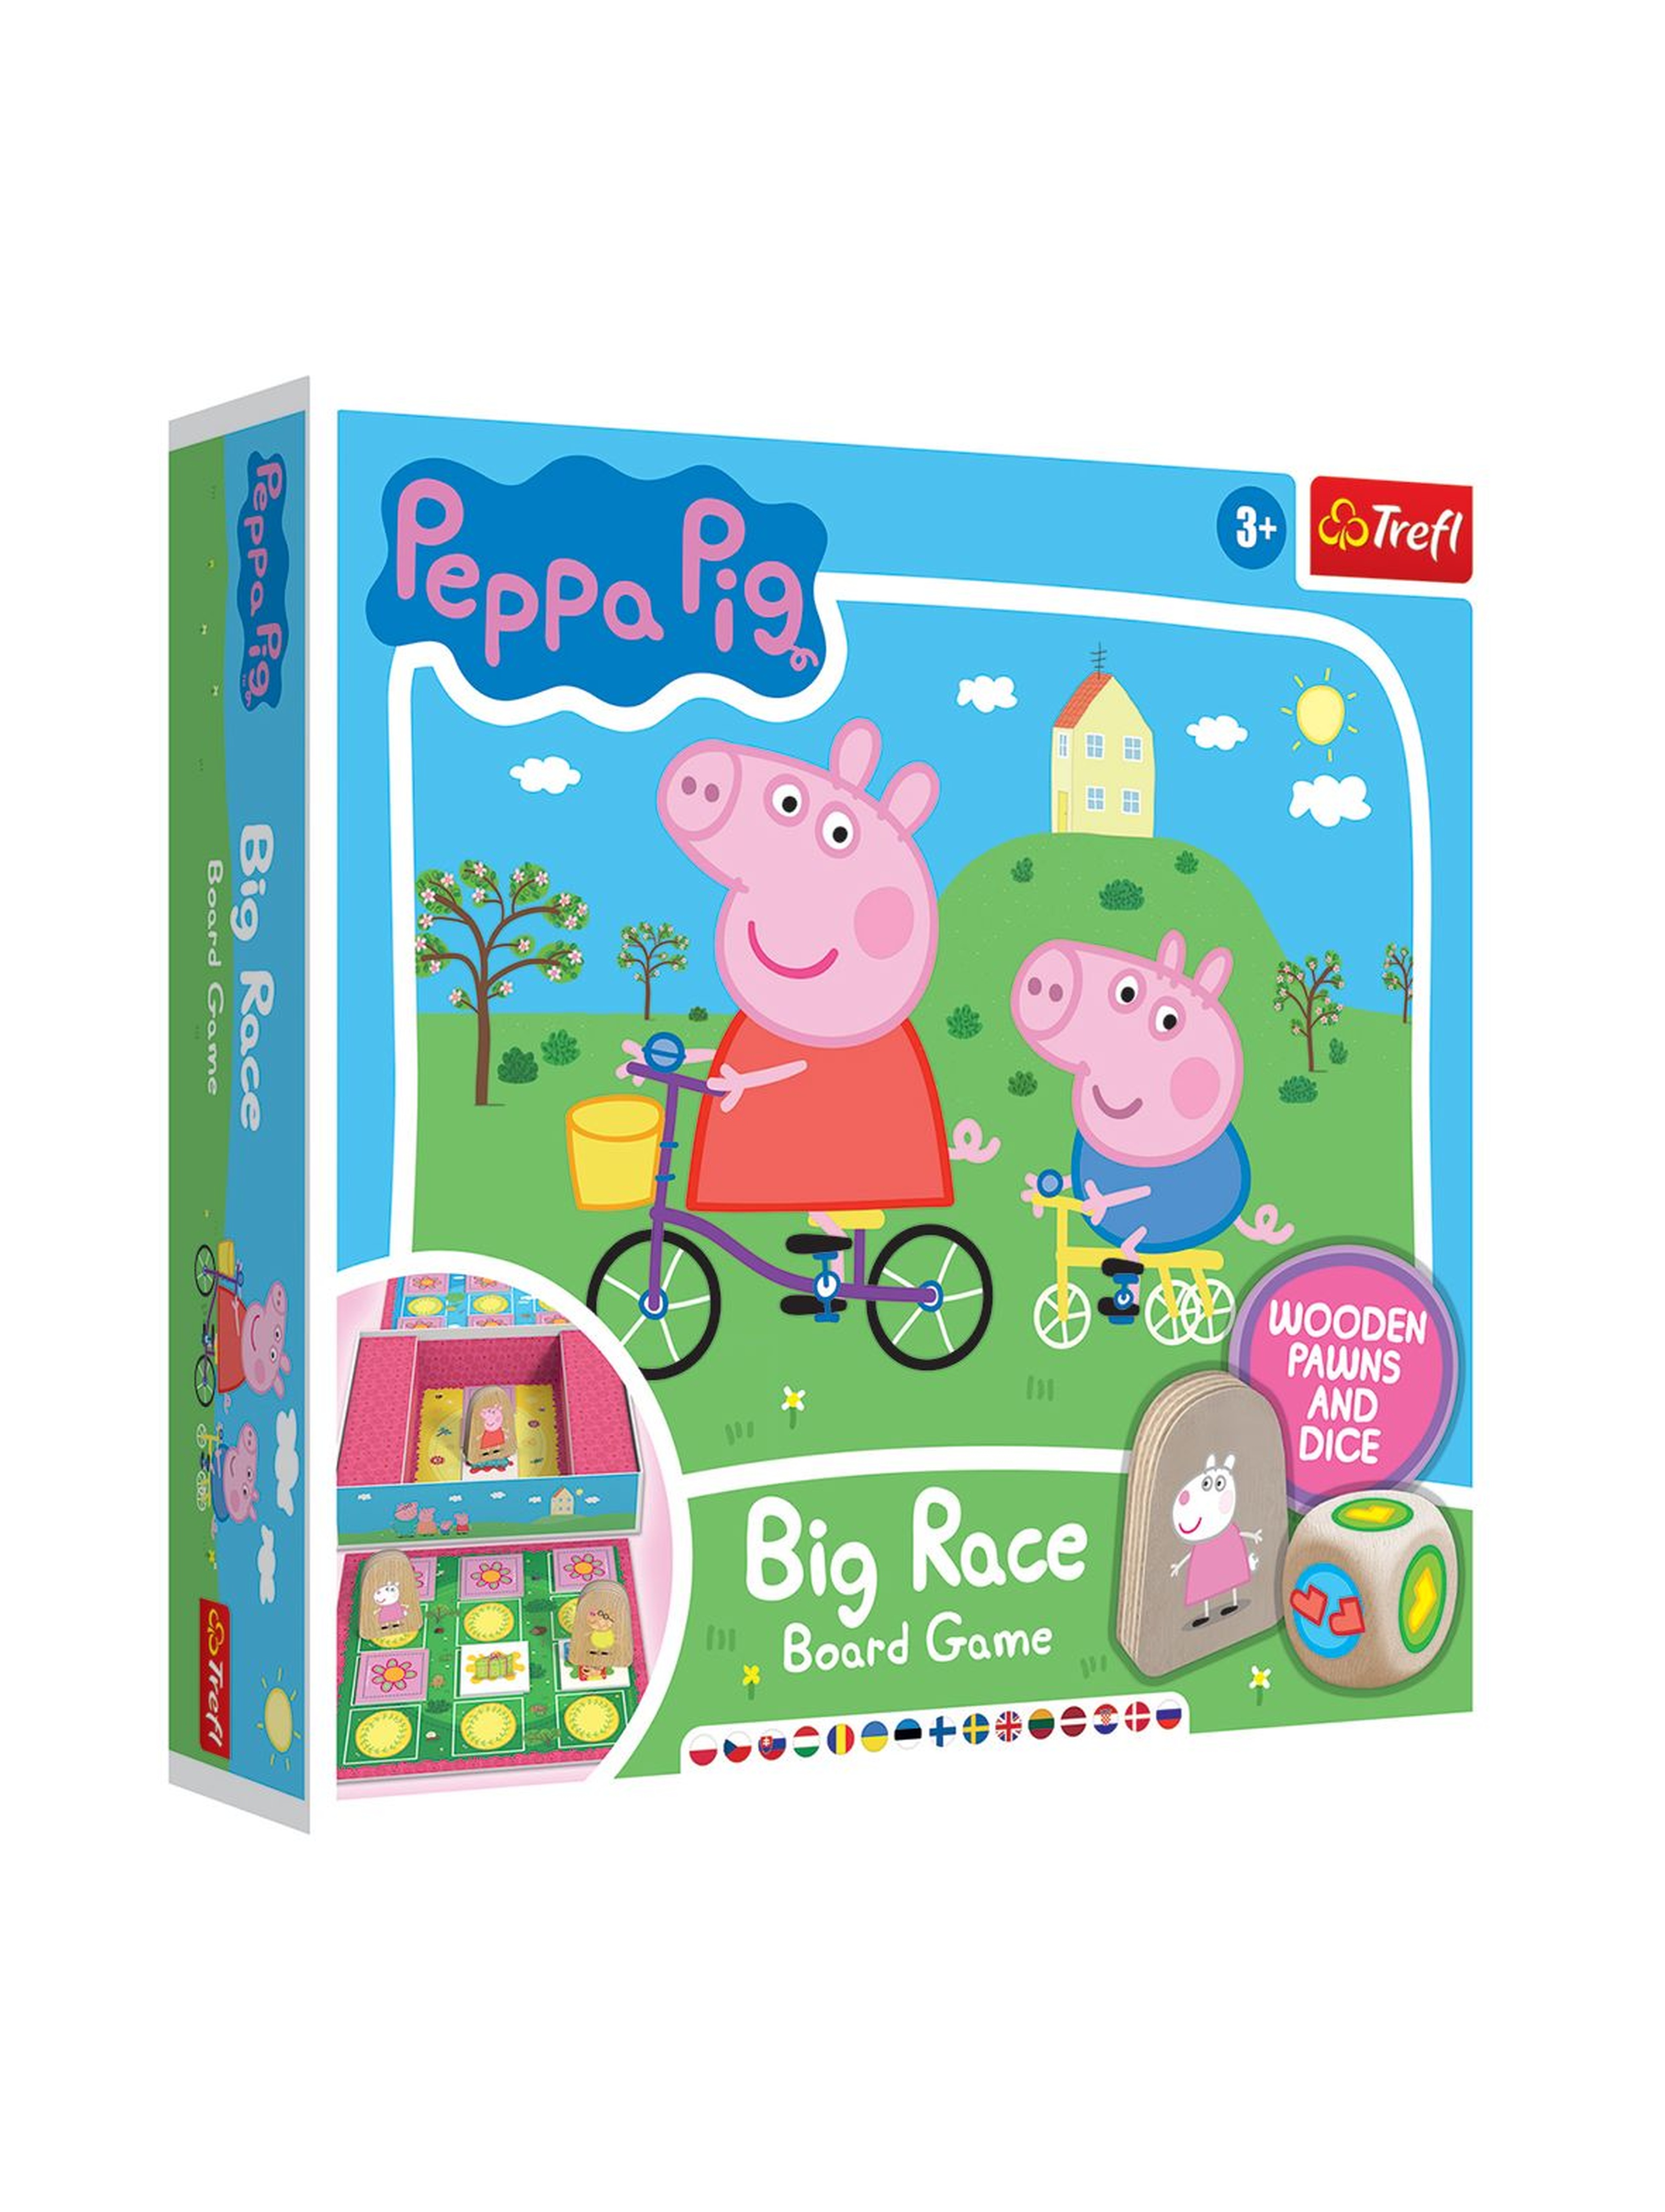 Gra planszowa - Wielki wyścig - Big race Peppa wiek 3+